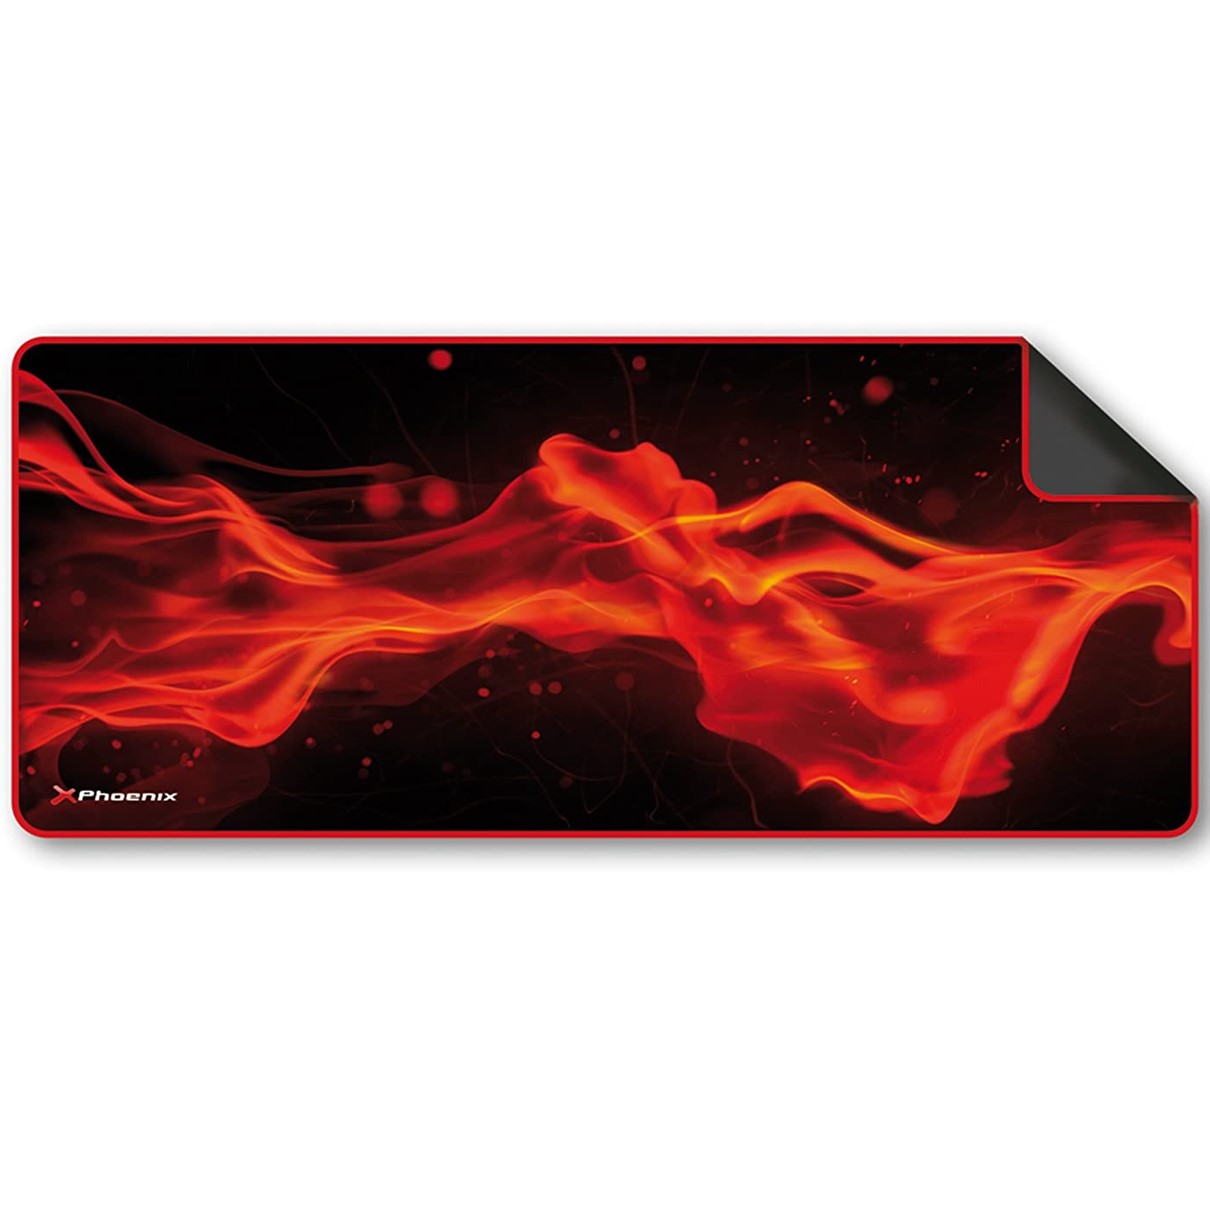 Alfombrilla phoenix phfactorpad - l gaming para mouse raton y teclado tamaño l 850 x 295 x 3 mm silicona suave antideslizante rojo y negro